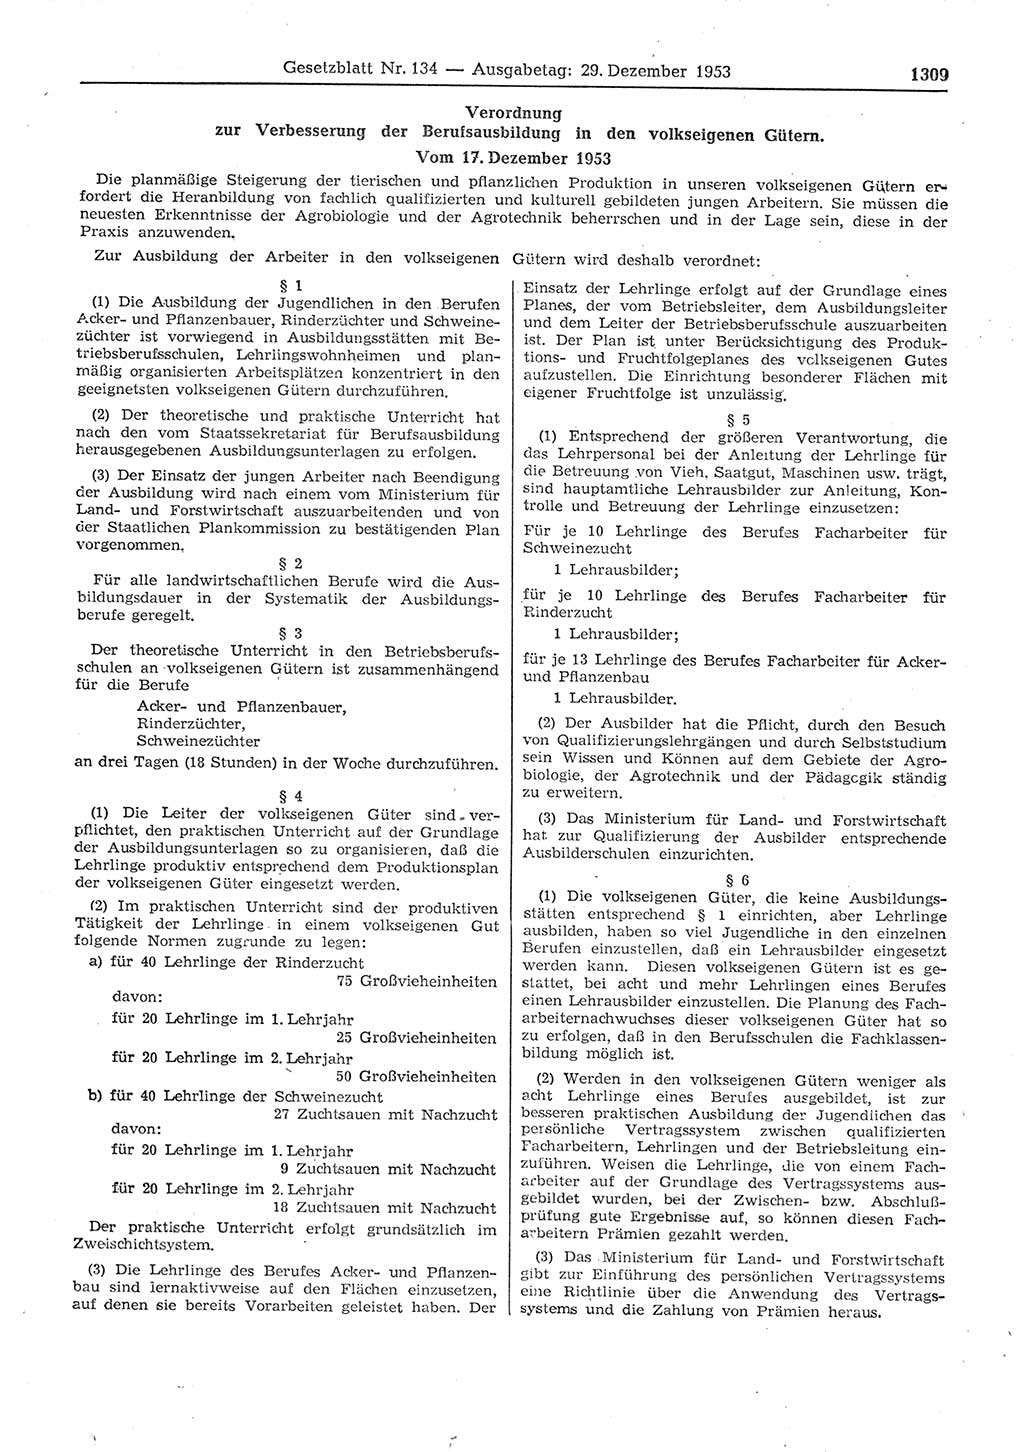 Gesetzblatt (GBl.) der Deutschen Demokratischen Republik (DDR) 1953, Seite 1309 (GBl. DDR 1953, S. 1309)